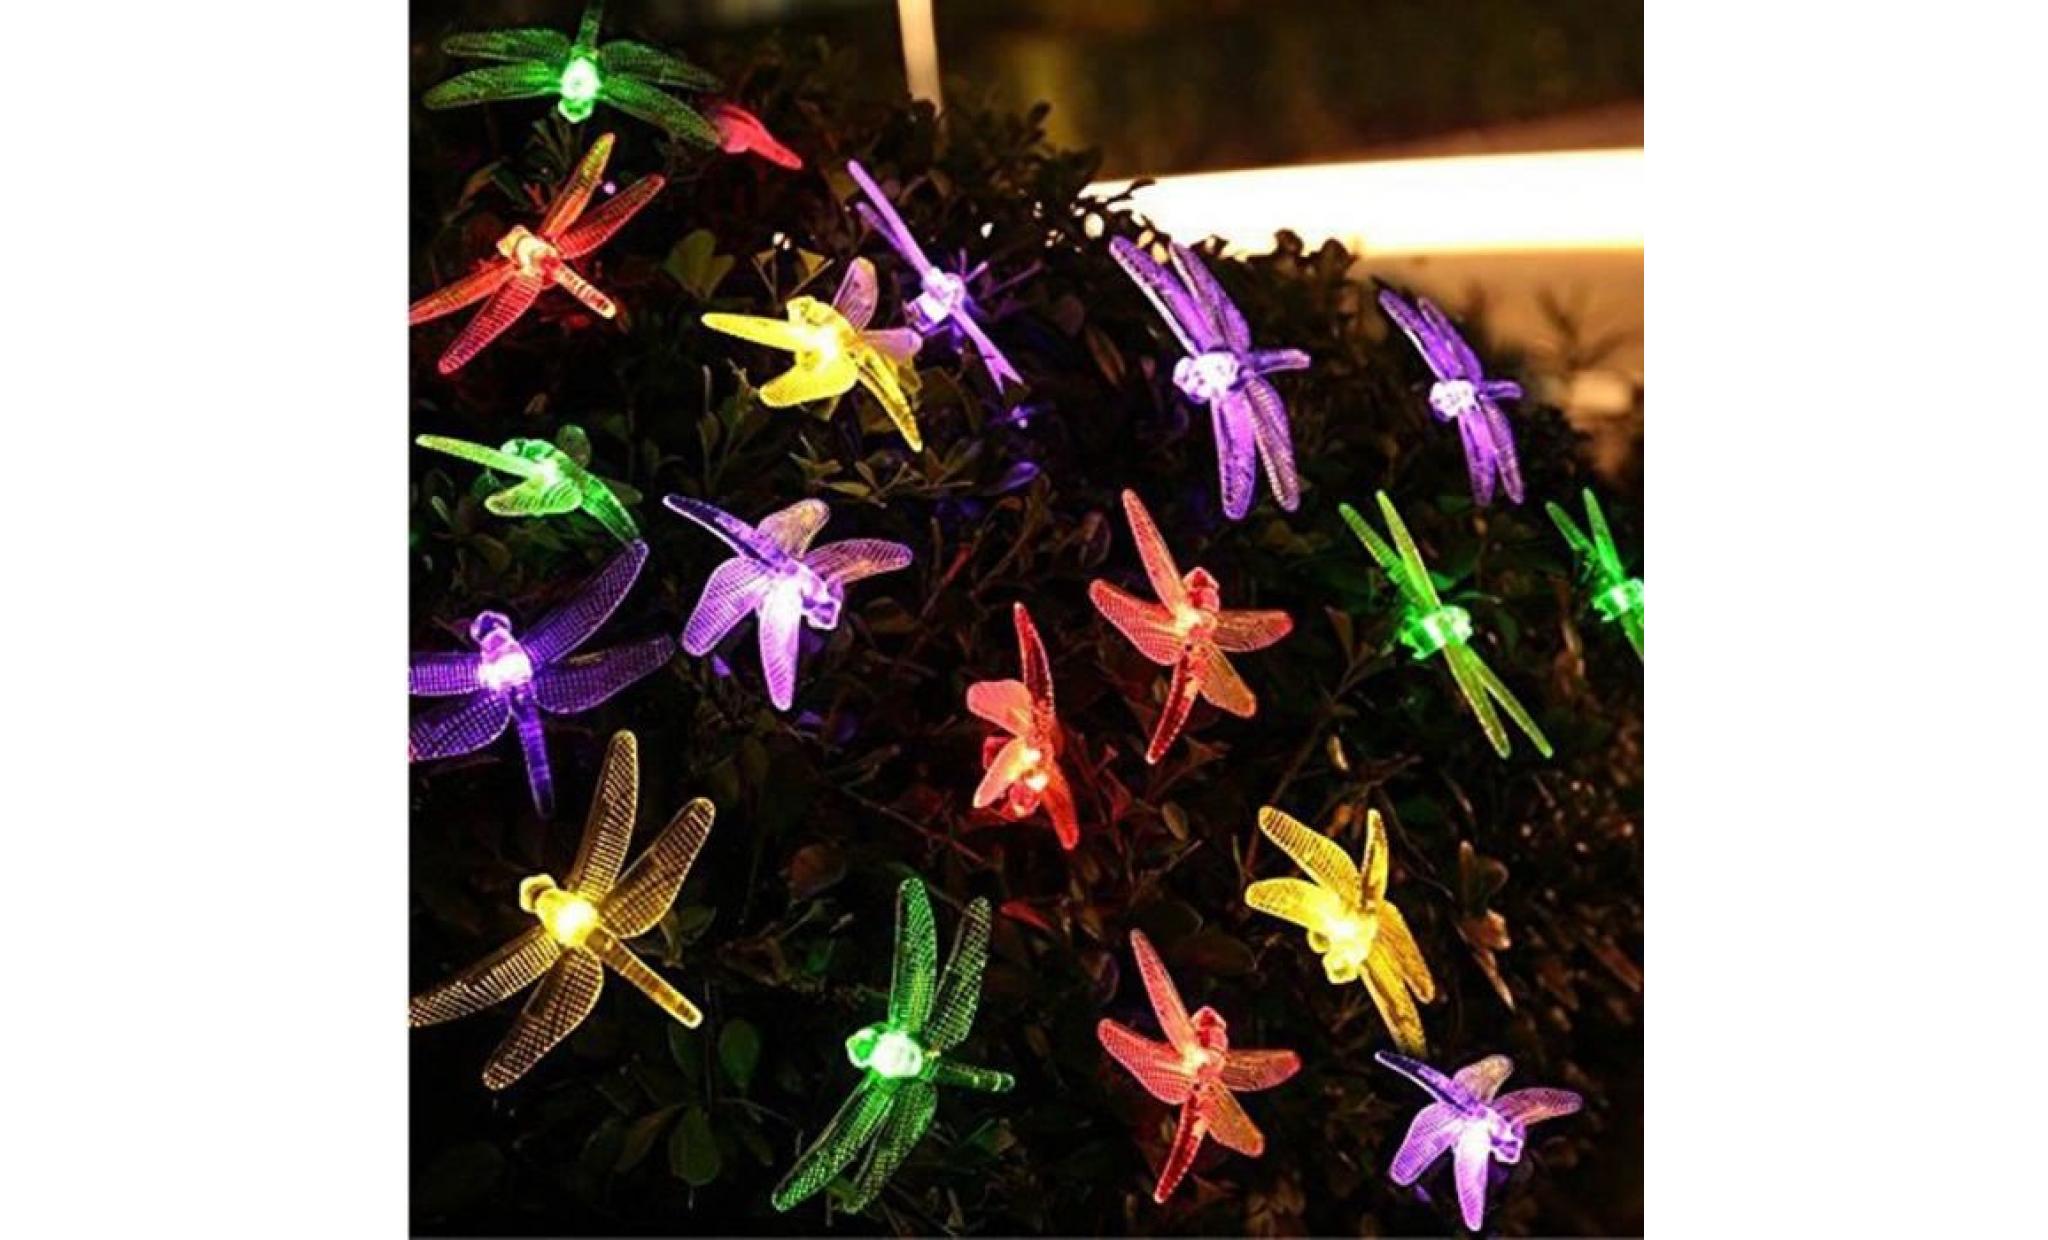 dragonfly Énergie solaire éclairage lampes solaires de lumières couleurs li789800